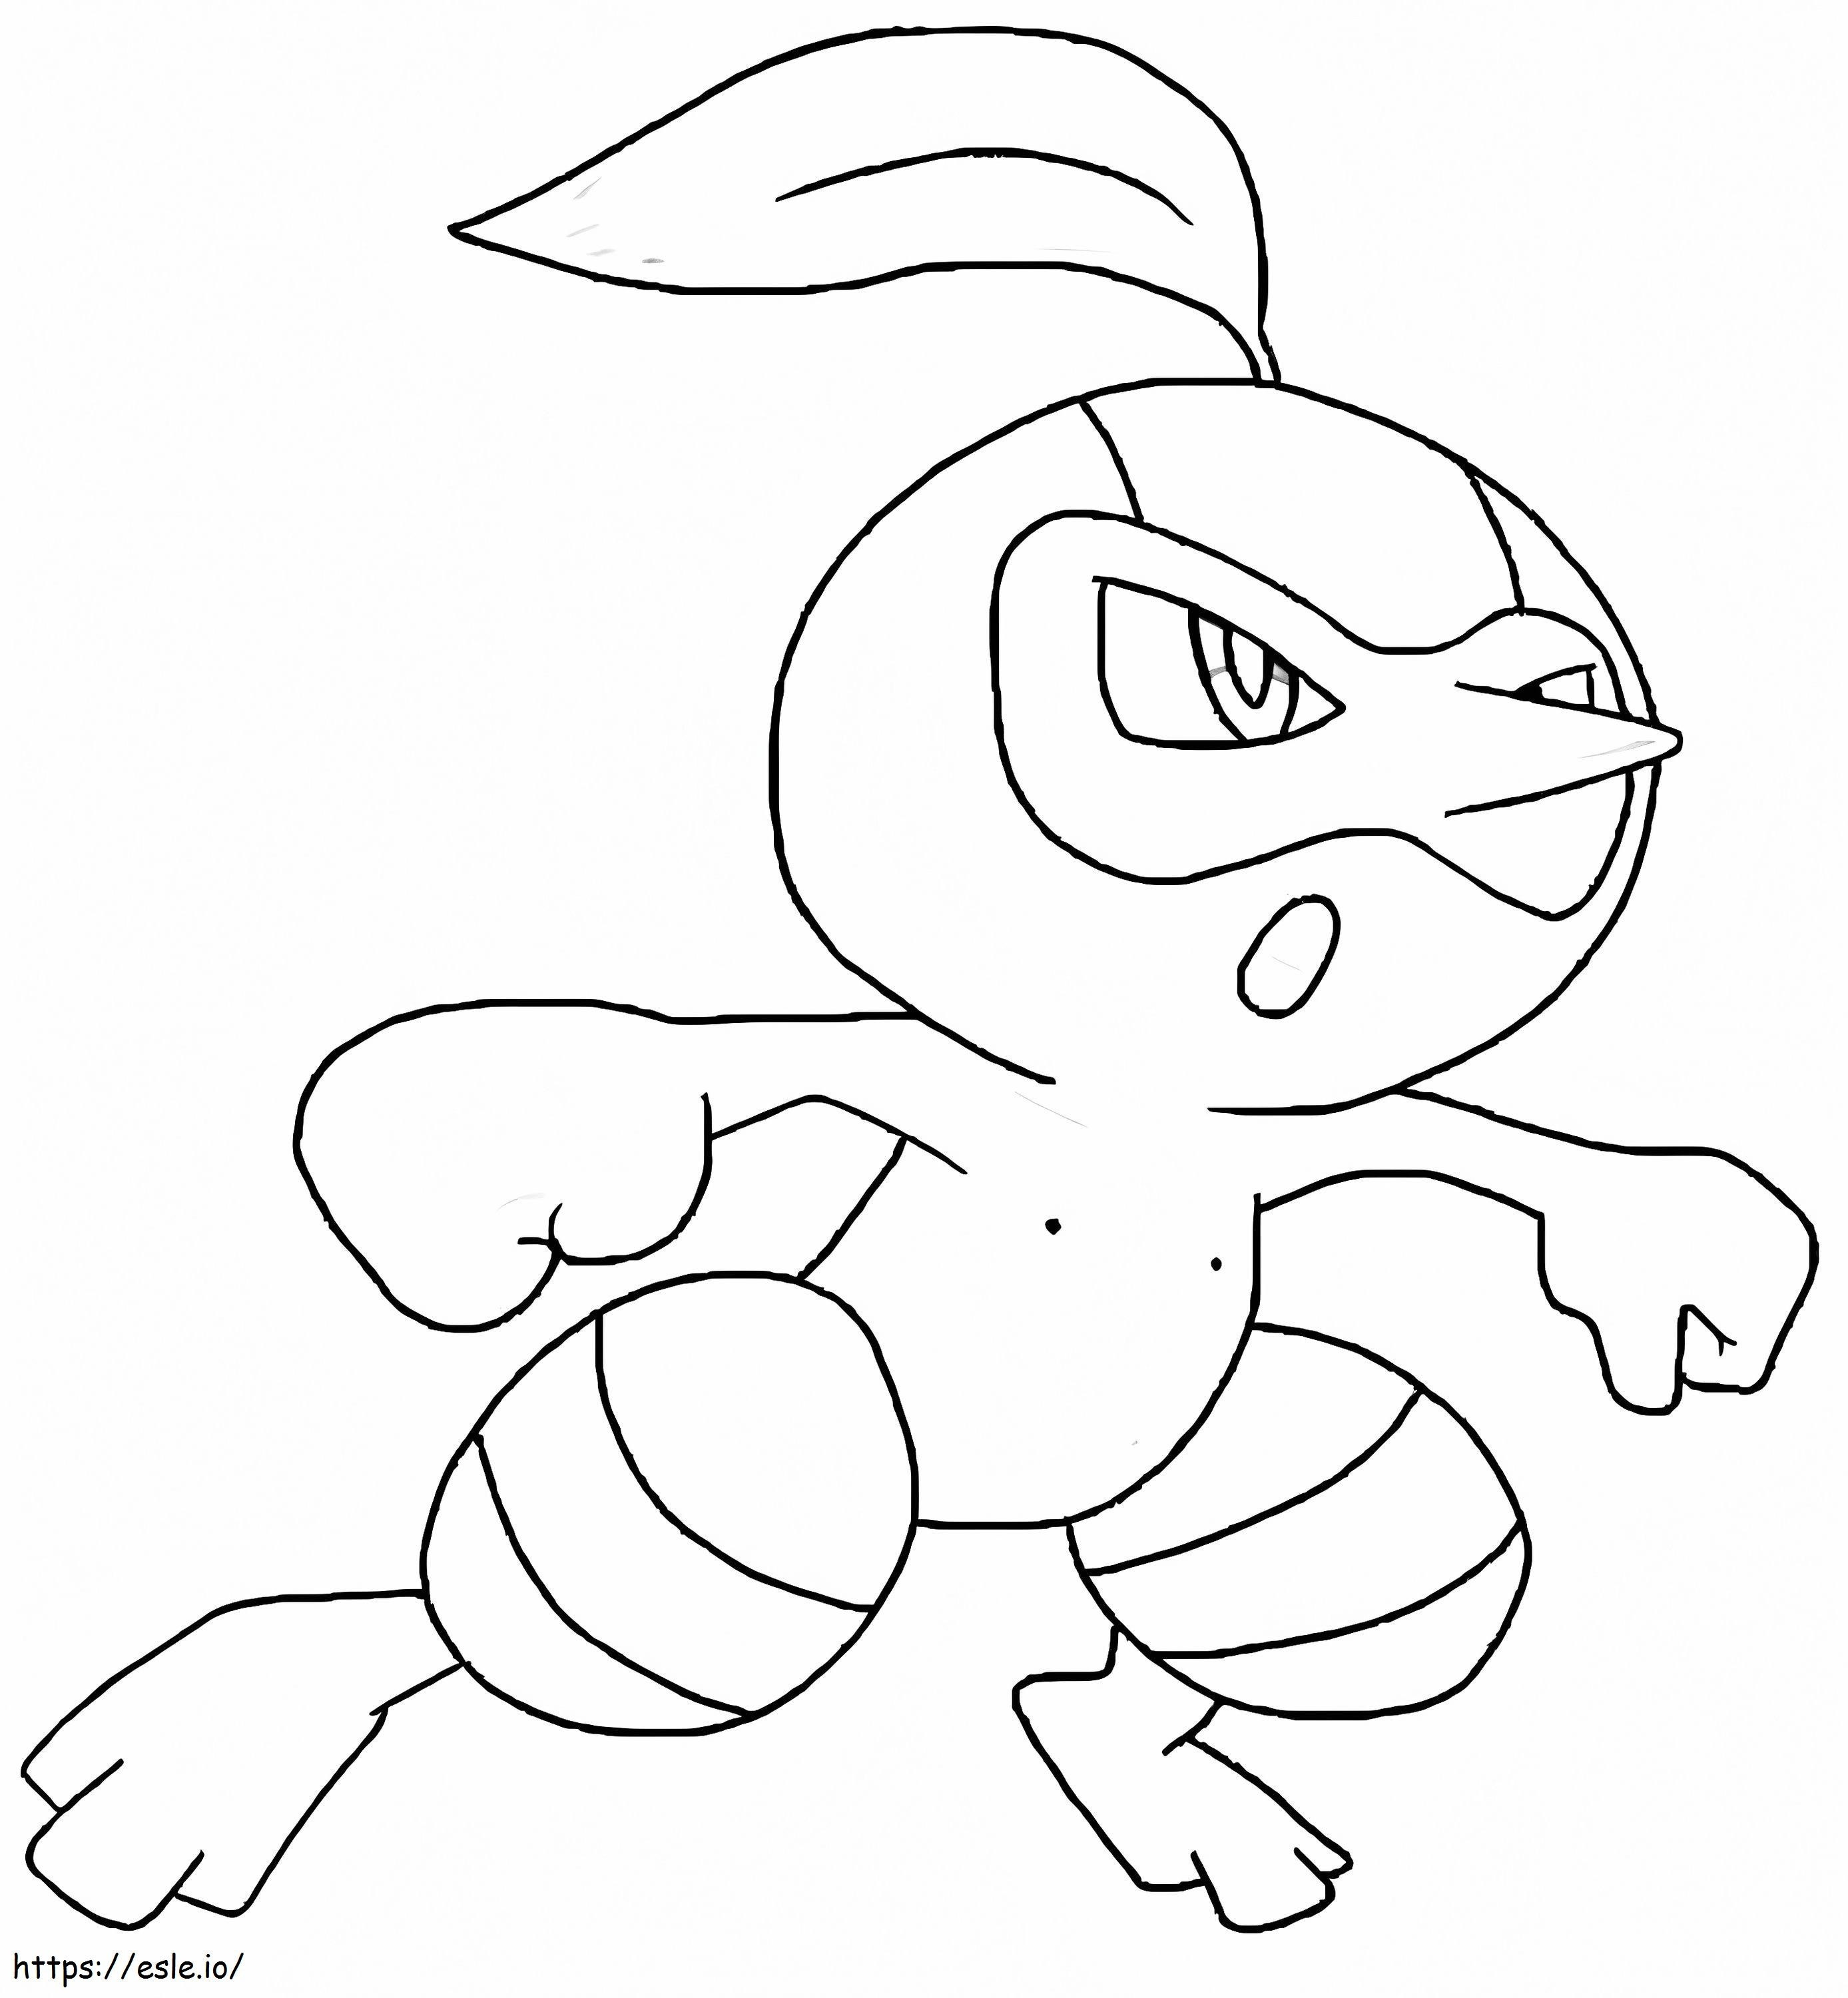 Coloriage Pokemon Nuzleaf 1 à imprimer dessin